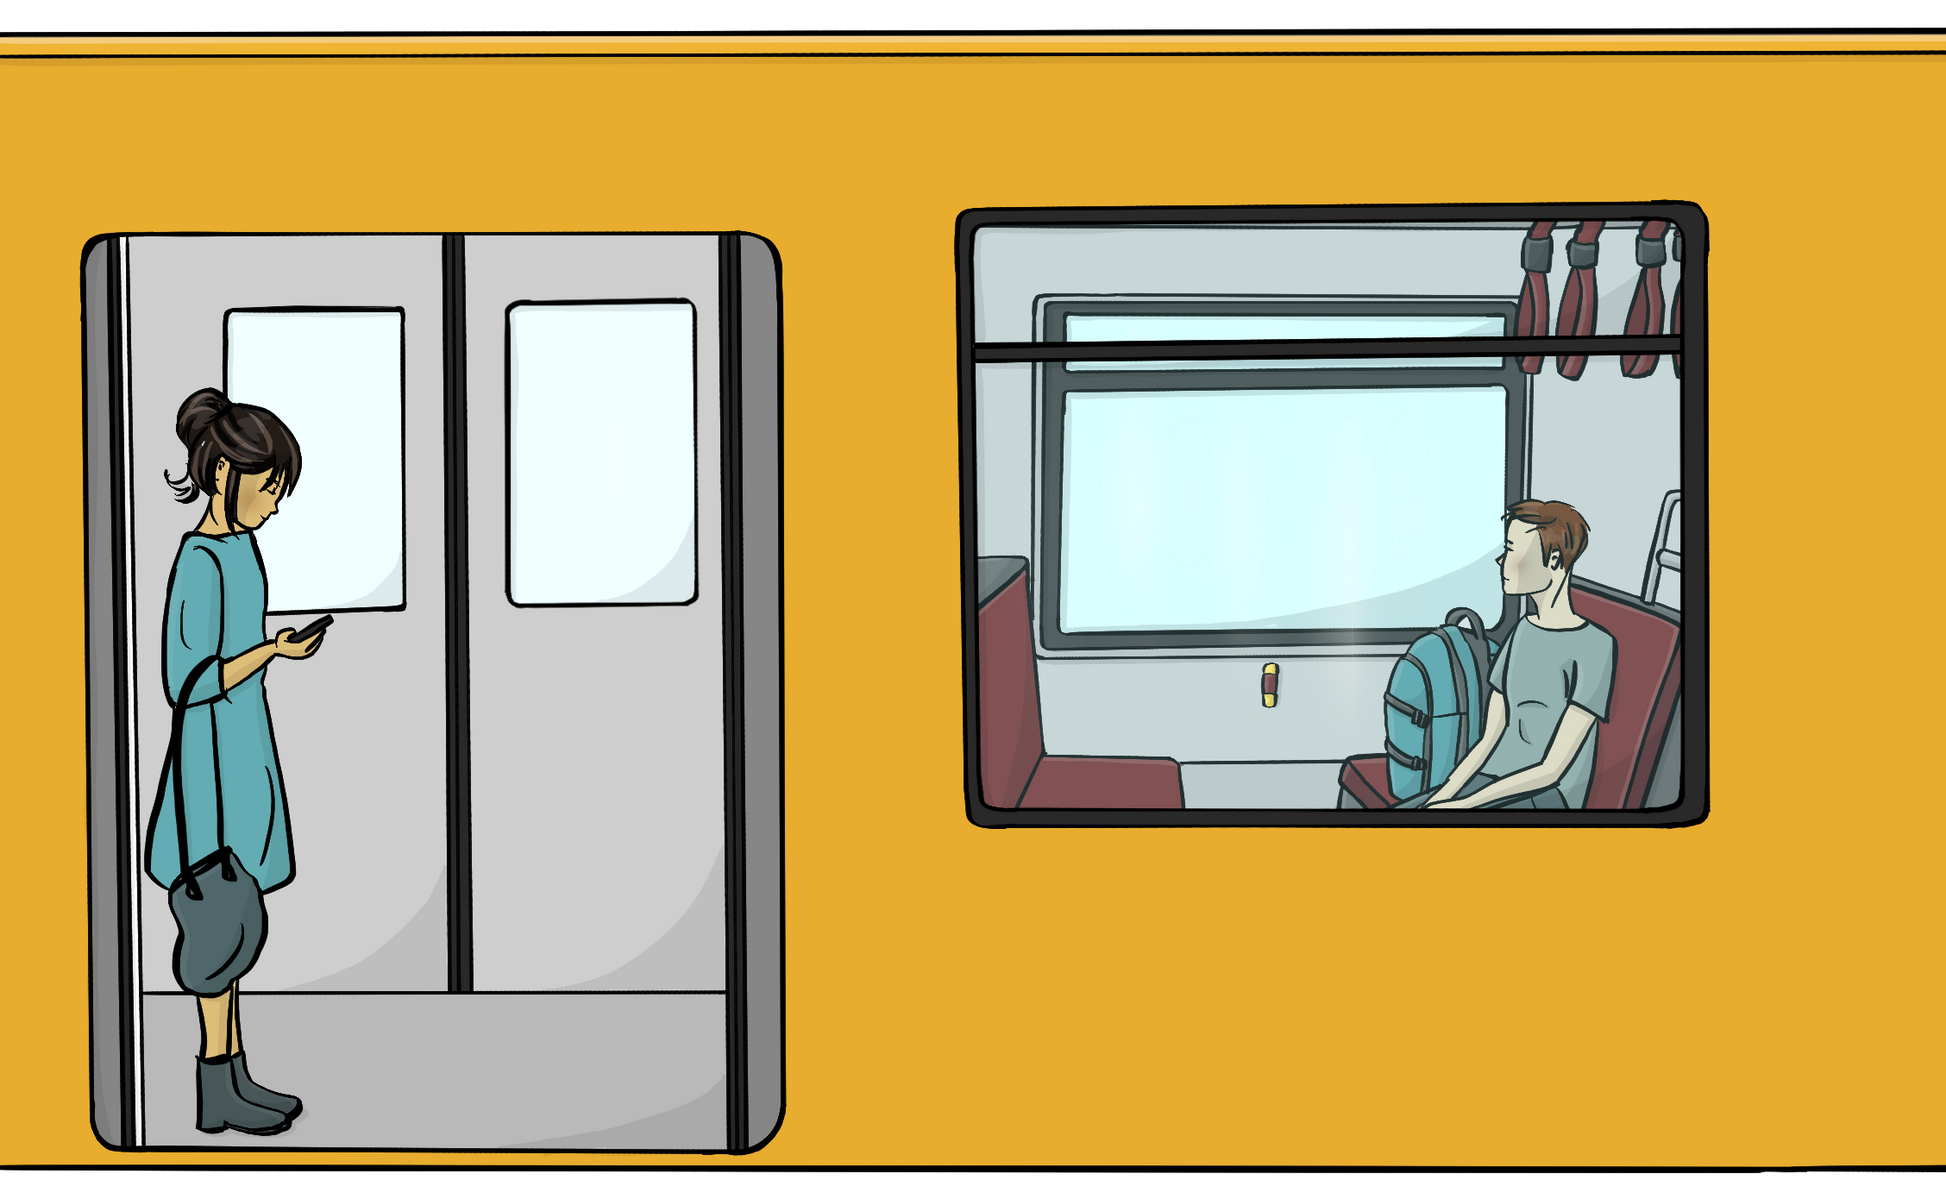 Eine U-Bahn von außen. In der U-Bahn sind nur zwei Personen. Eine Frau steht in der Tür und schaut auf ihr Handy. Ein Mann sitzt auf einem Sitz.